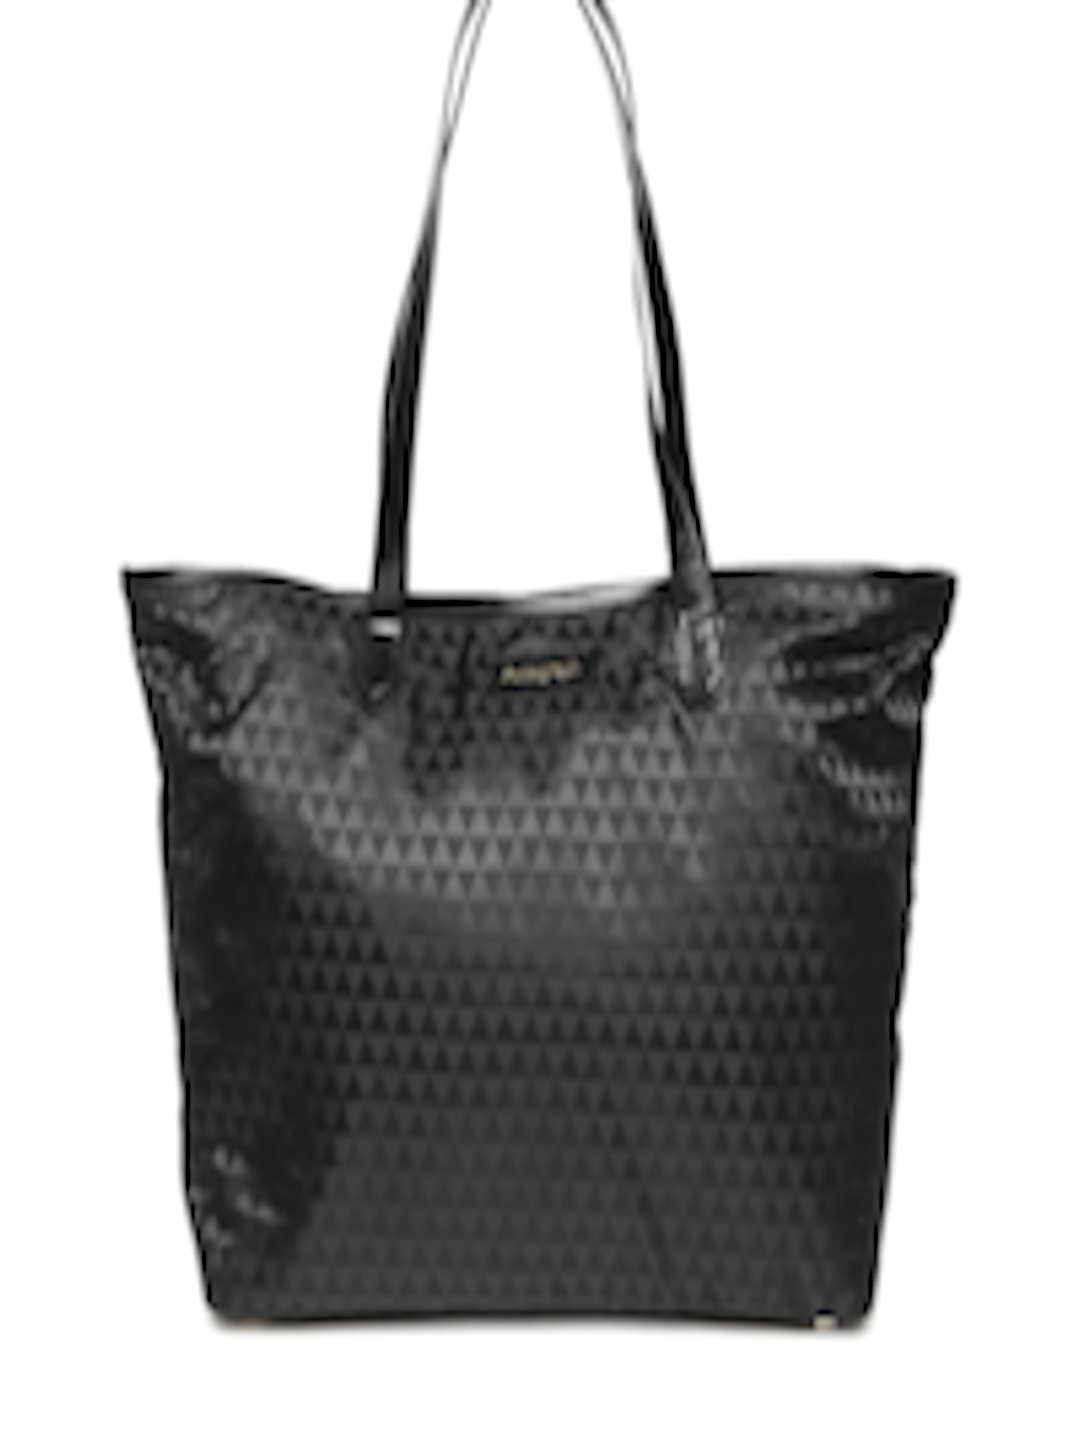 Buy Marks & Spencer Black Printed Shoulder Bag - Handbags for Women